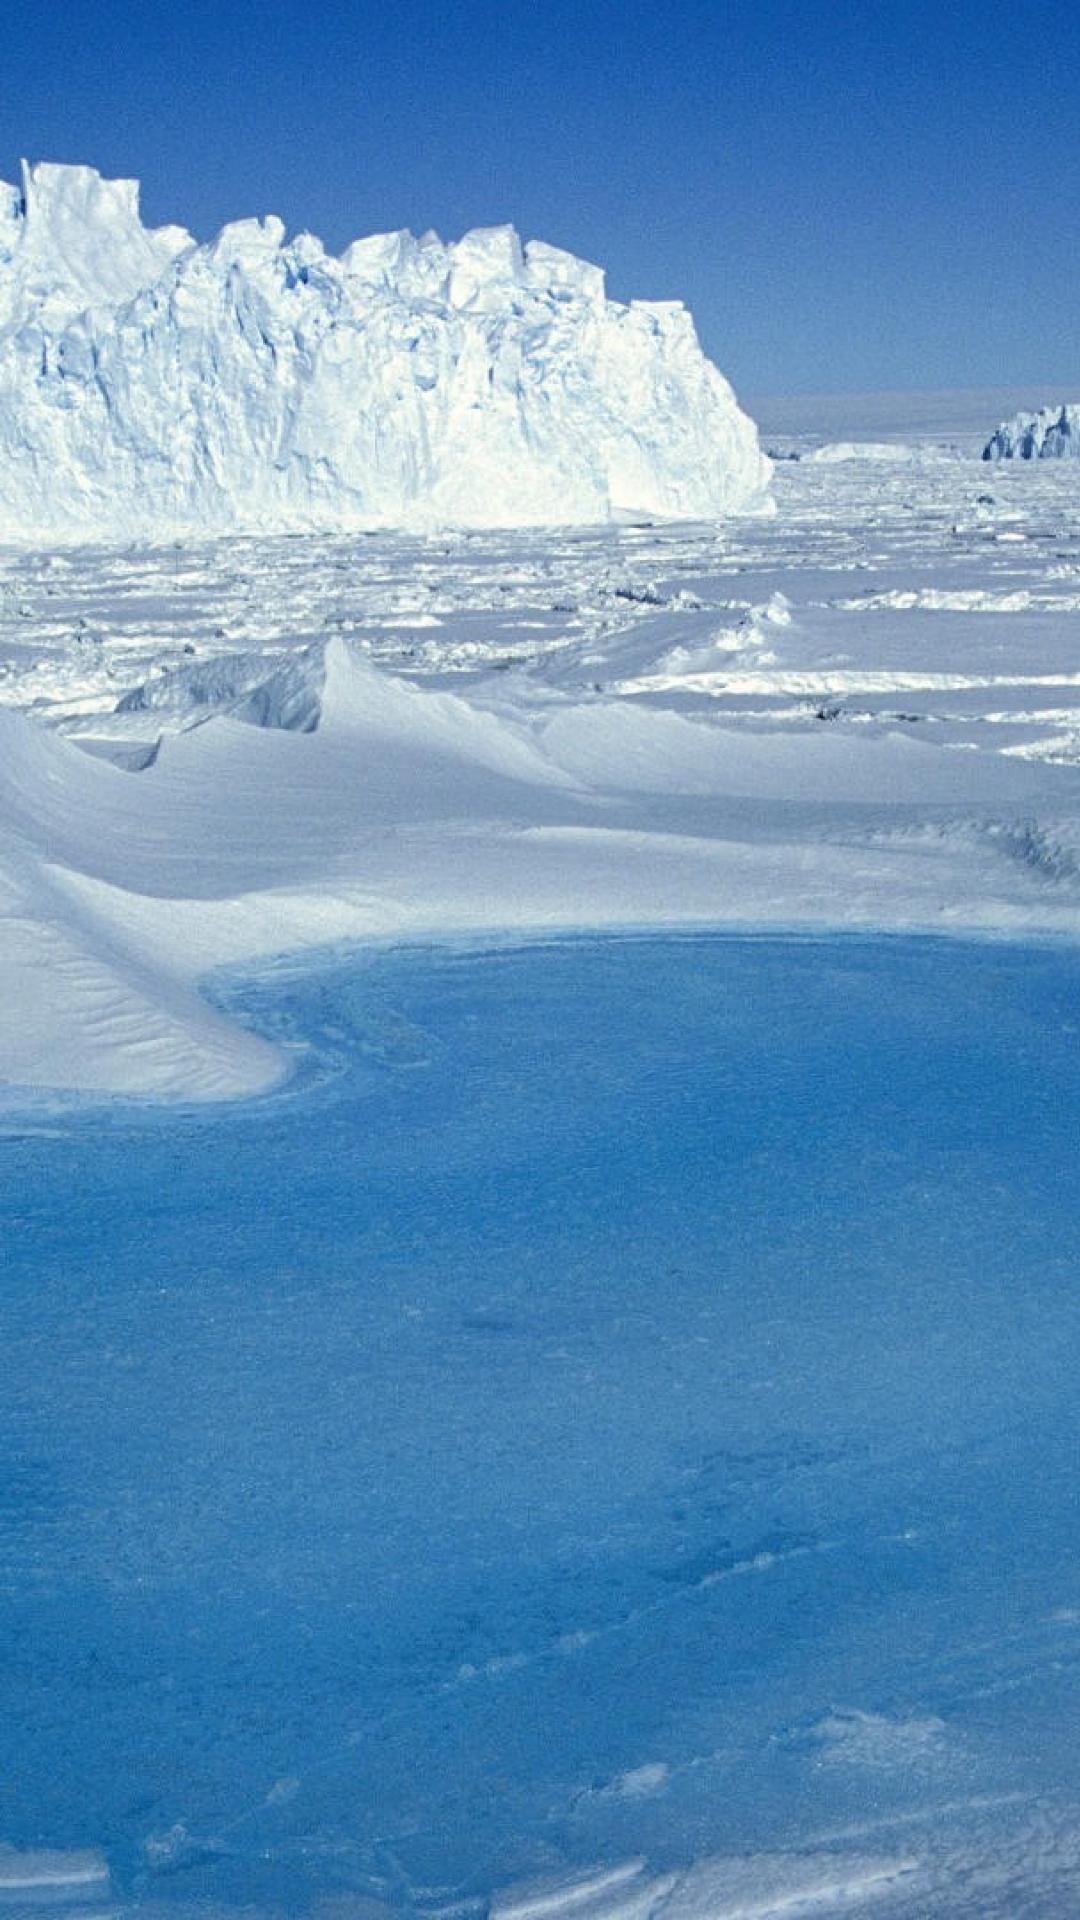 Antarctica Travels, Arctic phone wallpaper, Breathtaking visuals, Cold beauty, 1080x1920 Full HD Phone